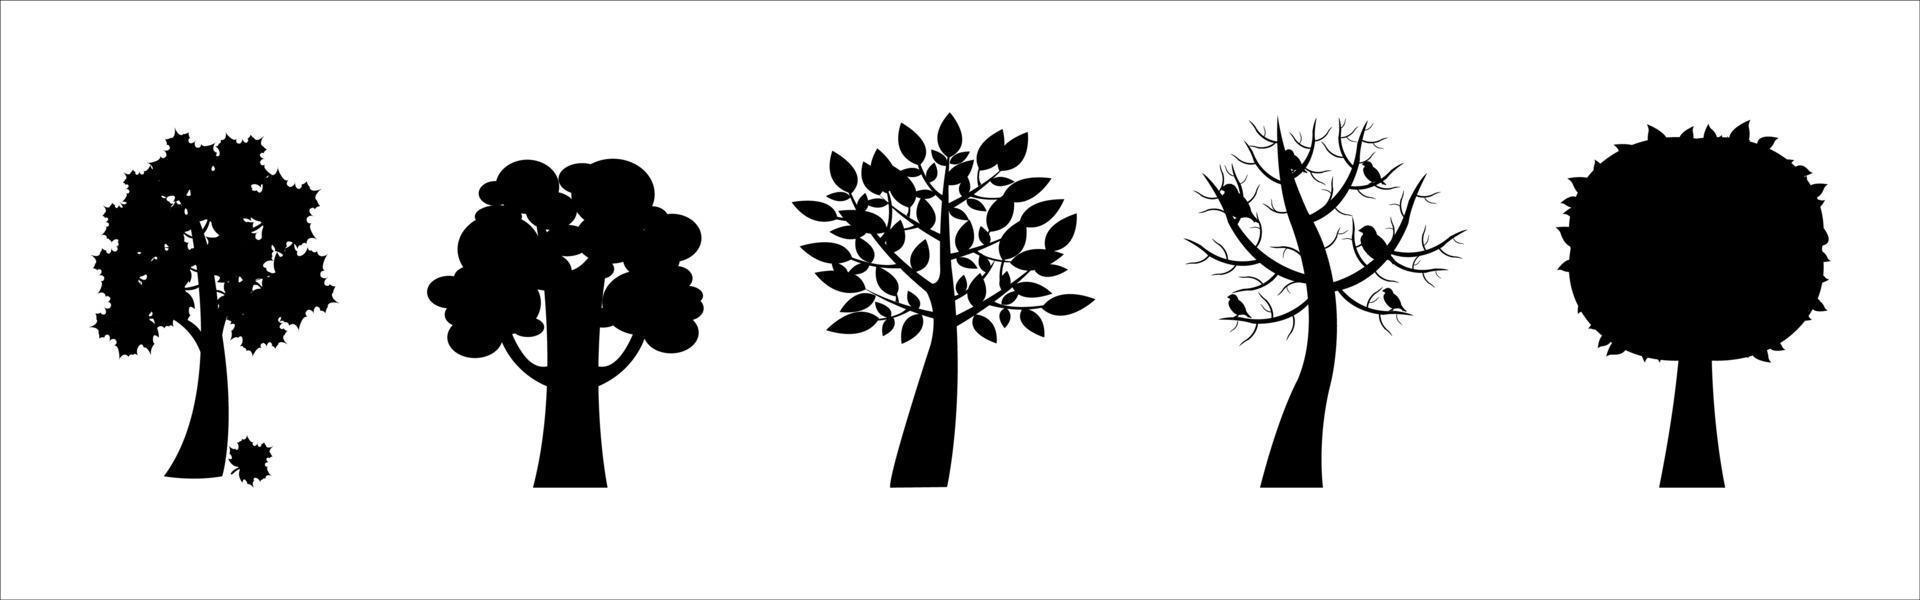 vecteur détaillé de silhouettes d'arbres